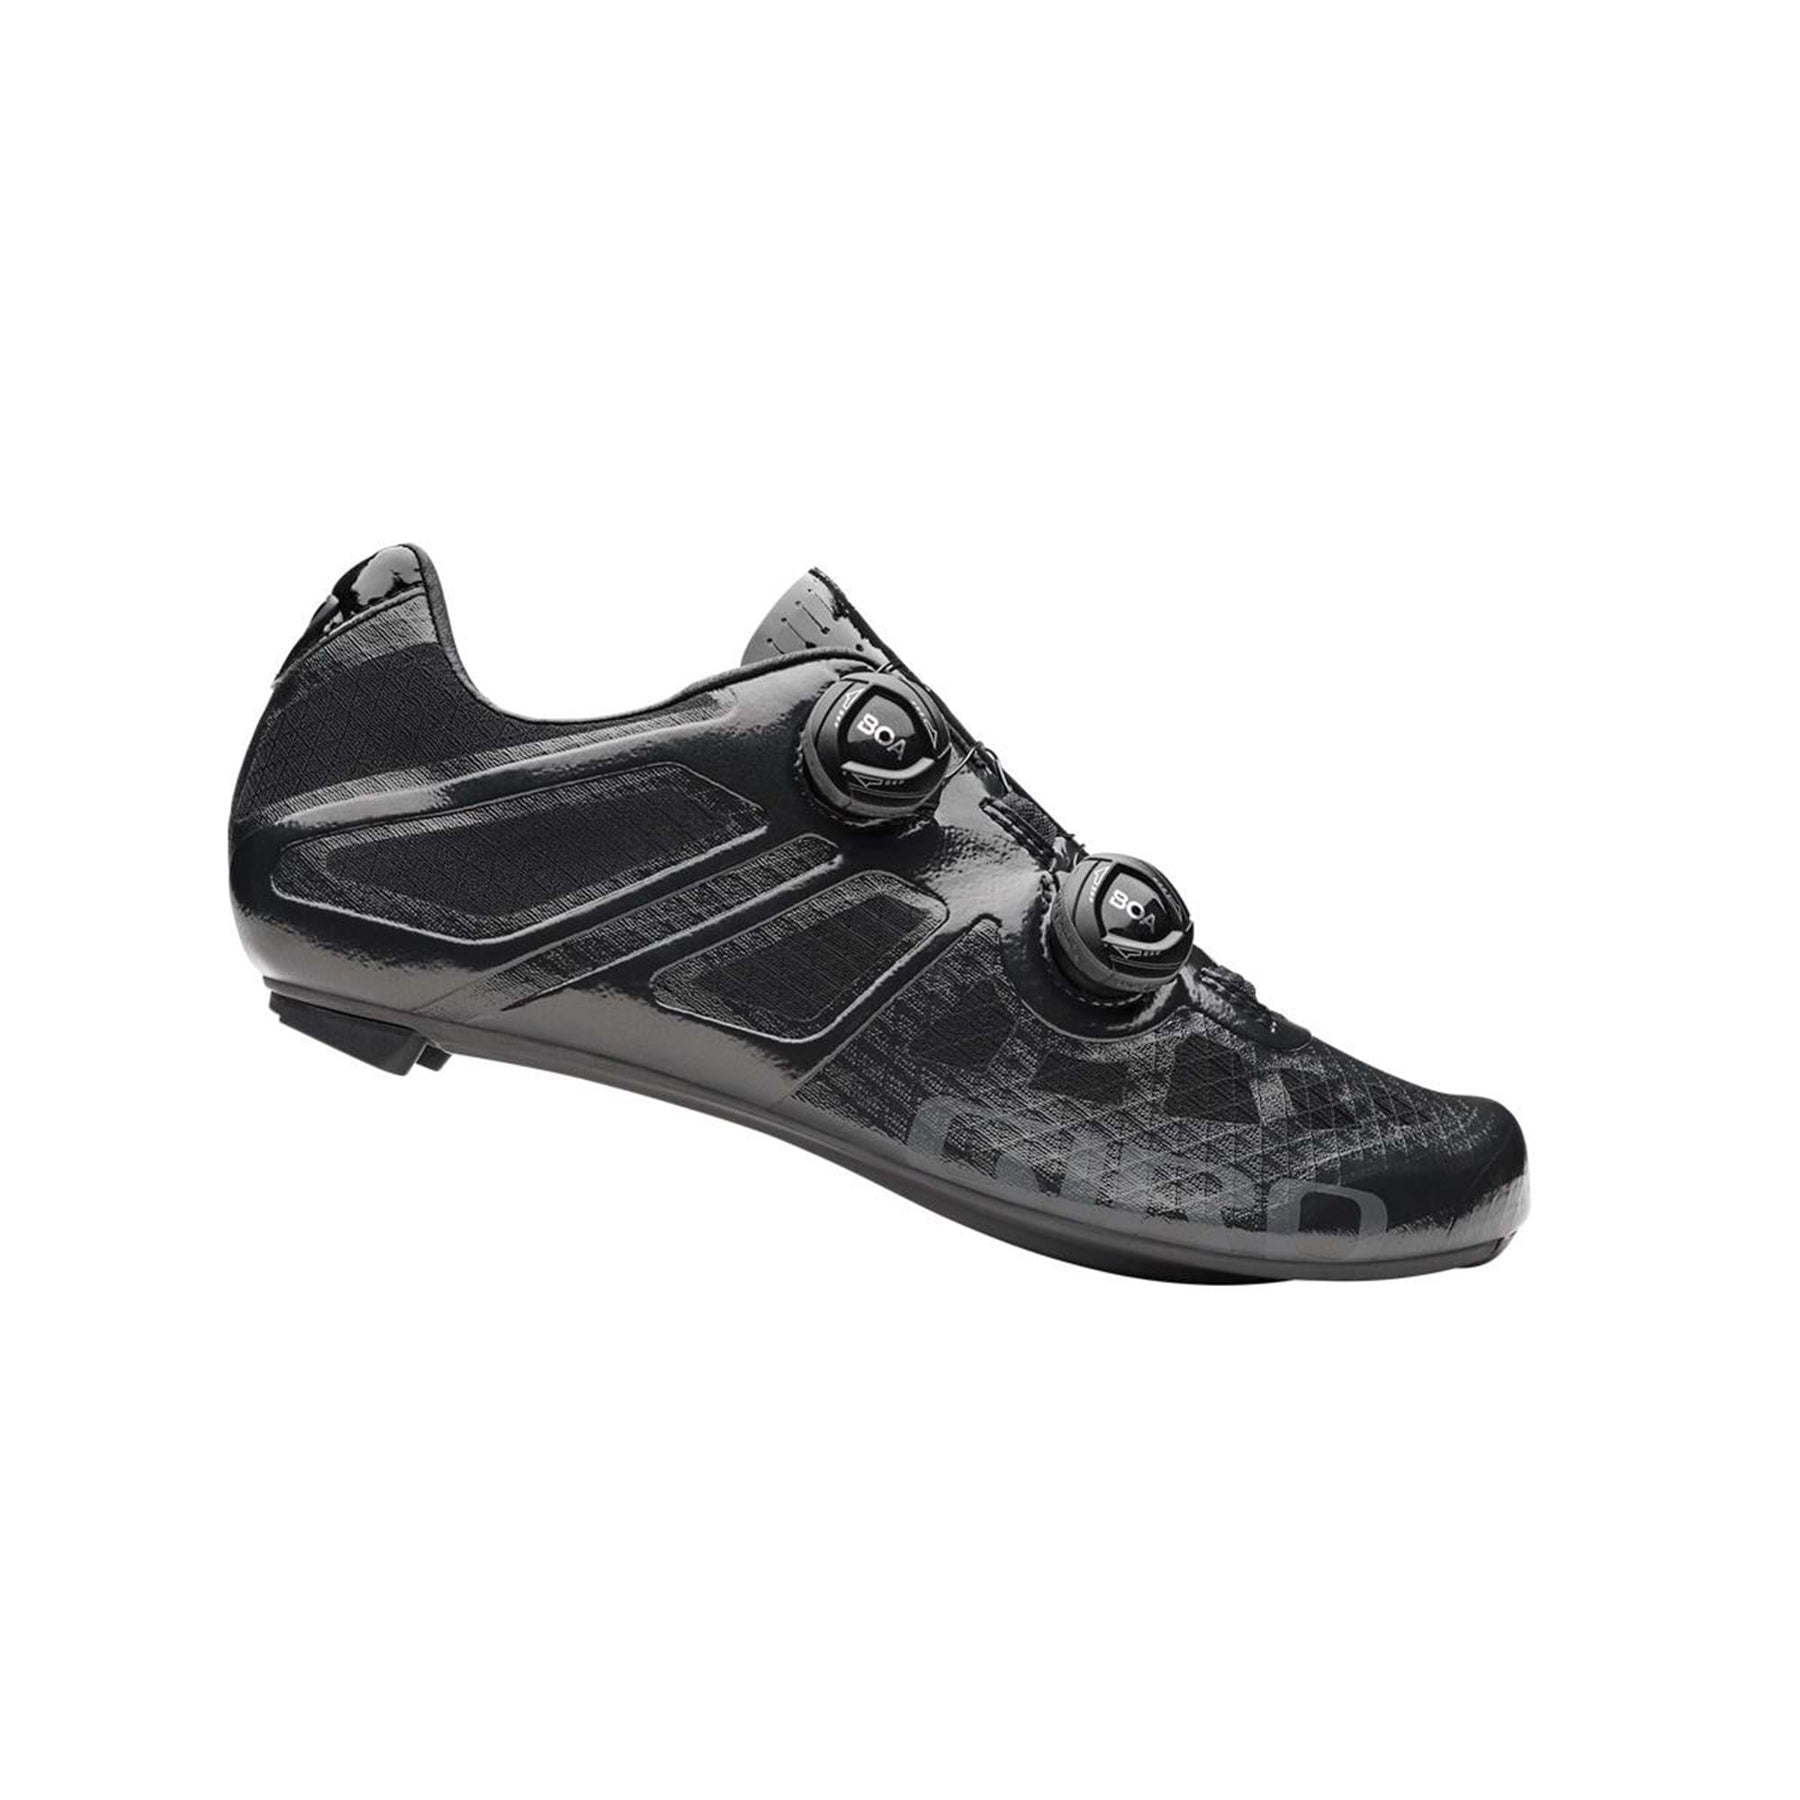 Giro Imperial Road Cycling Shoe